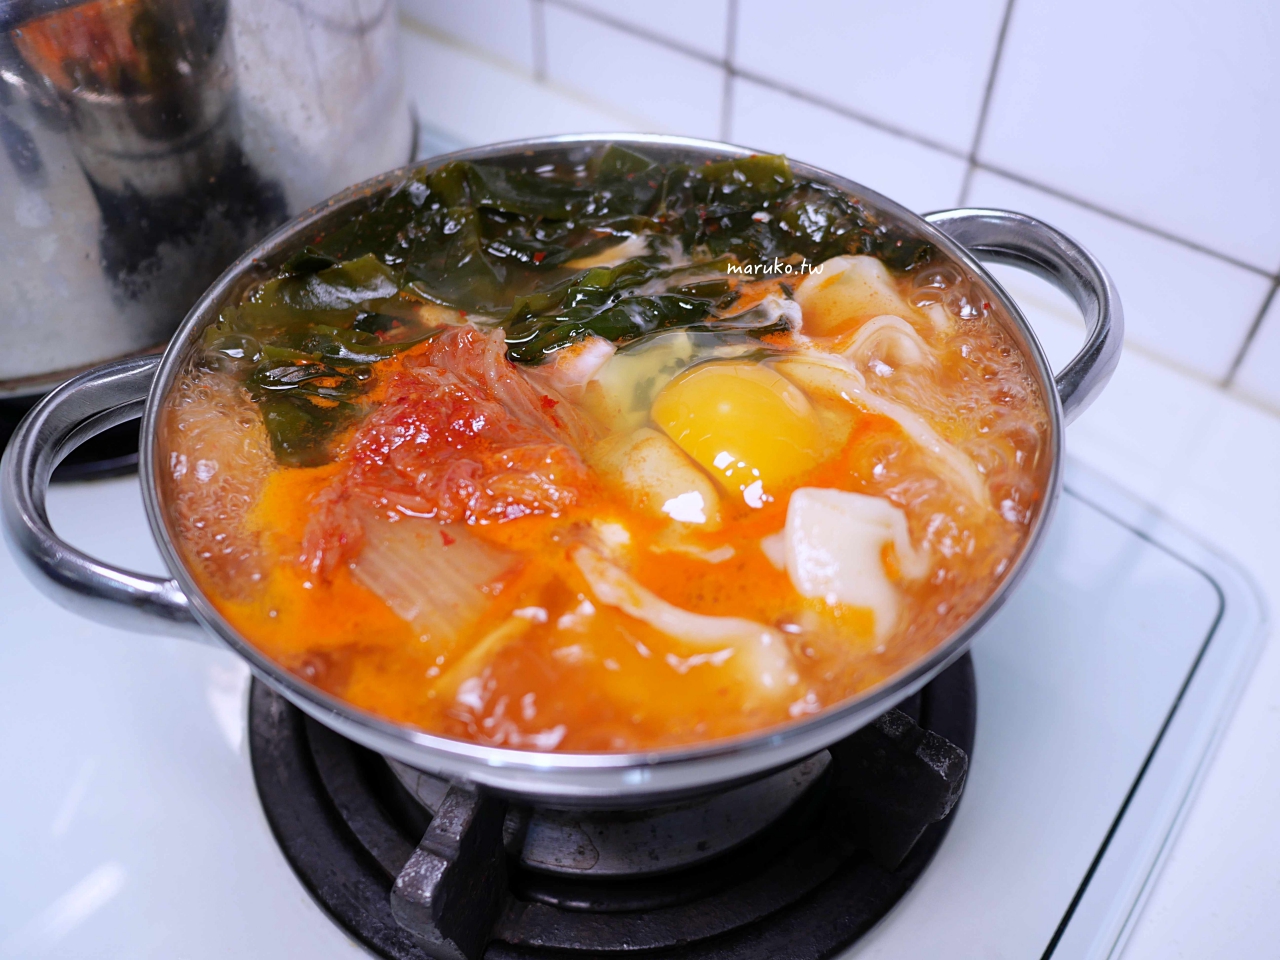 【食譜】韓式泡菜餃子湯 適合冬天吃的暖呼呼鍋物 首爾廣藏市場好物推薦